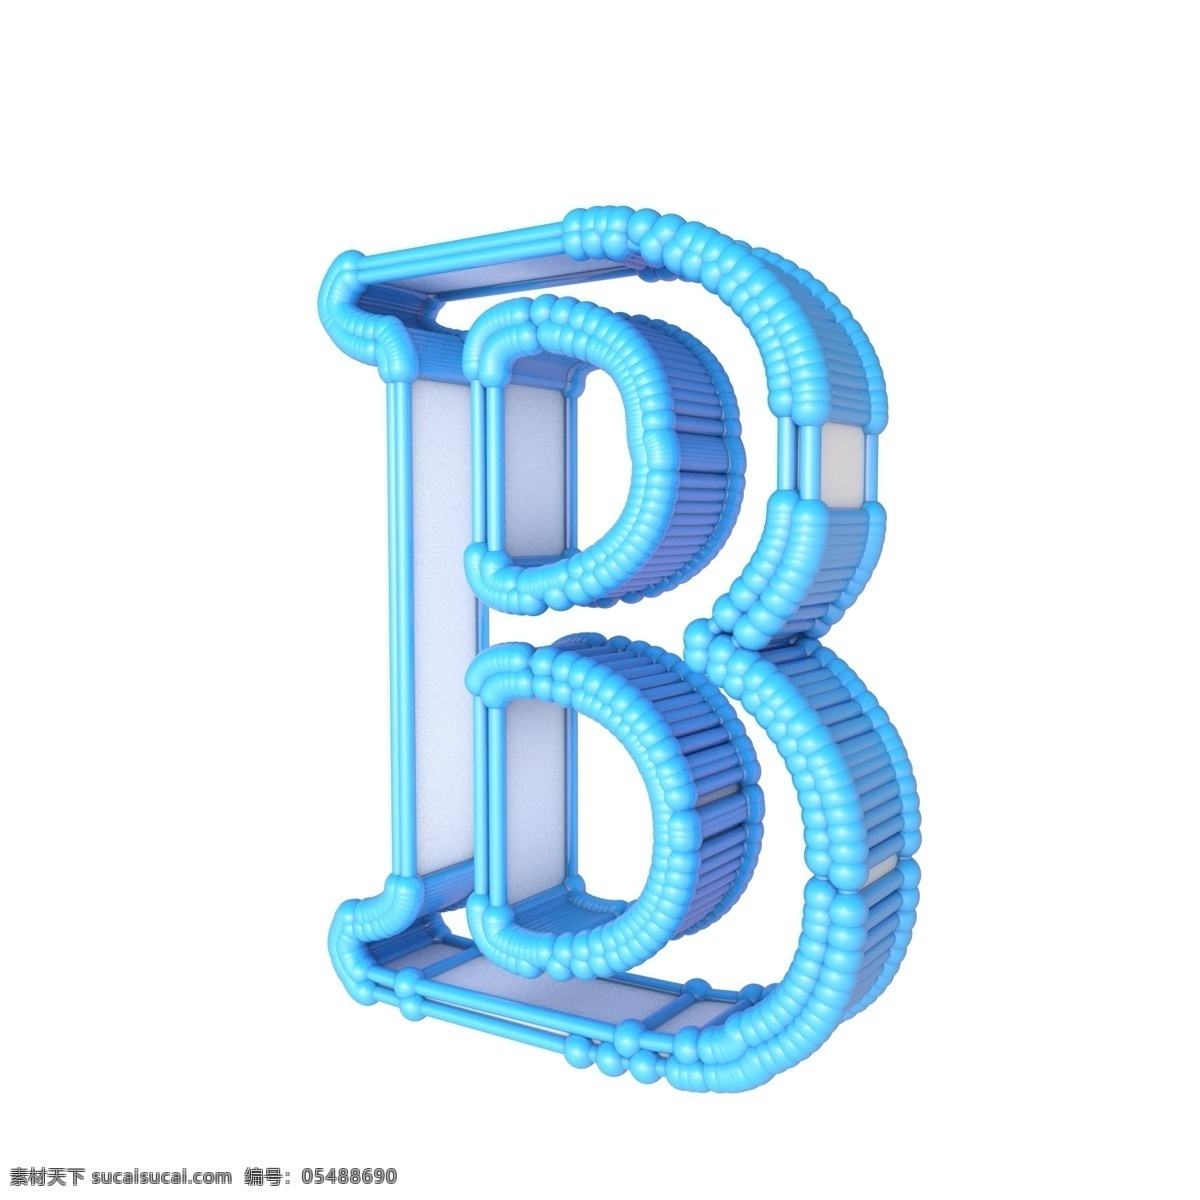 c4d 立体 字母 b 英文字母 c4d字母 字母b 蓝色字母 蓝色英文 蓝色字母b